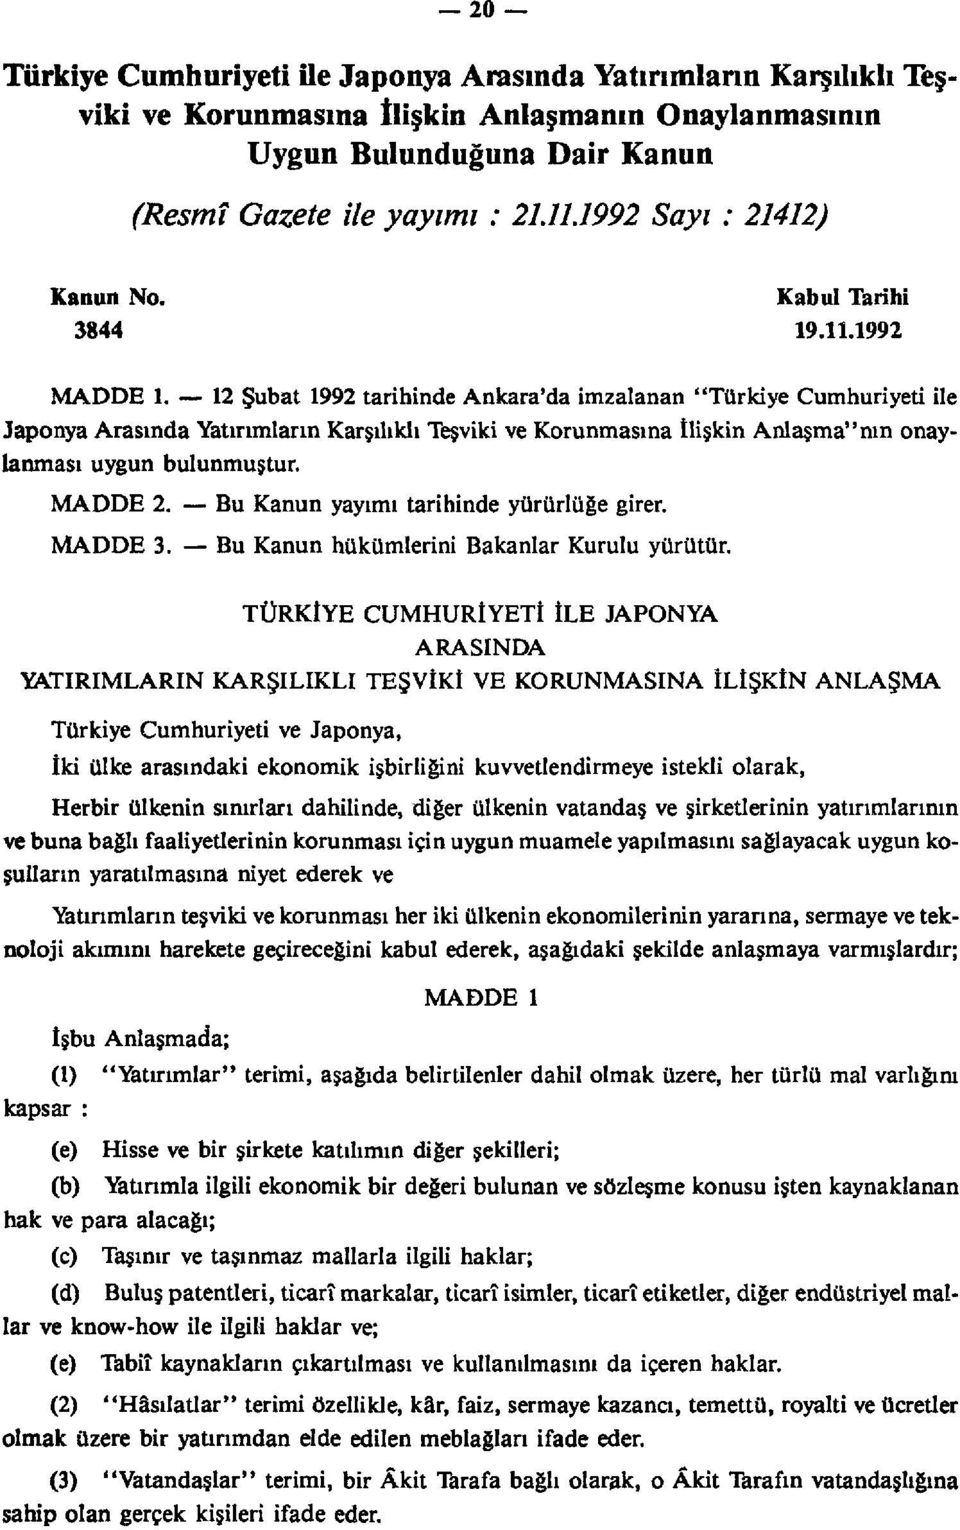 12 Şubat 1992 tarihinde Ankara'da imzalanan "Türkiye Cumhuriyeti ile Japonya Arasında Yatırımların Karşılıklı Teşviki ve Korunmasına İlişkin Anlaşma" nın onaylanması uygun bulunmuştur. MADDE 2.